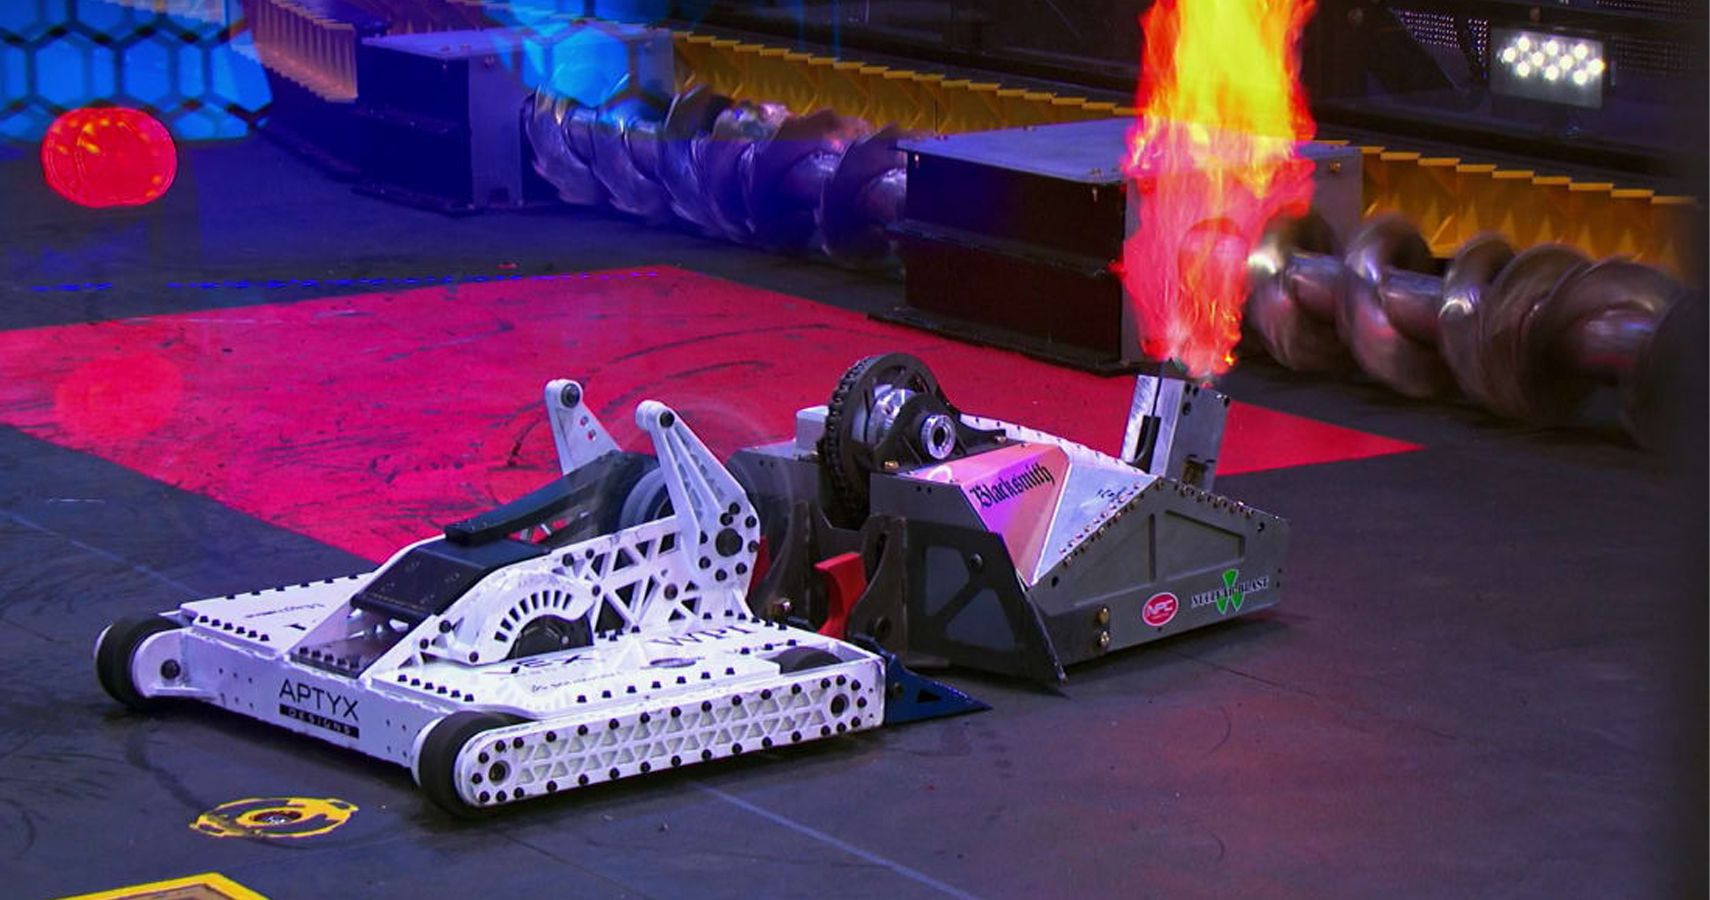 Расписание битвы роботов. Битвы роботов Дискавери. Битва роботов на арене шоу. Бронебот бои роботов. Битвы роботов Battlebots 2019.